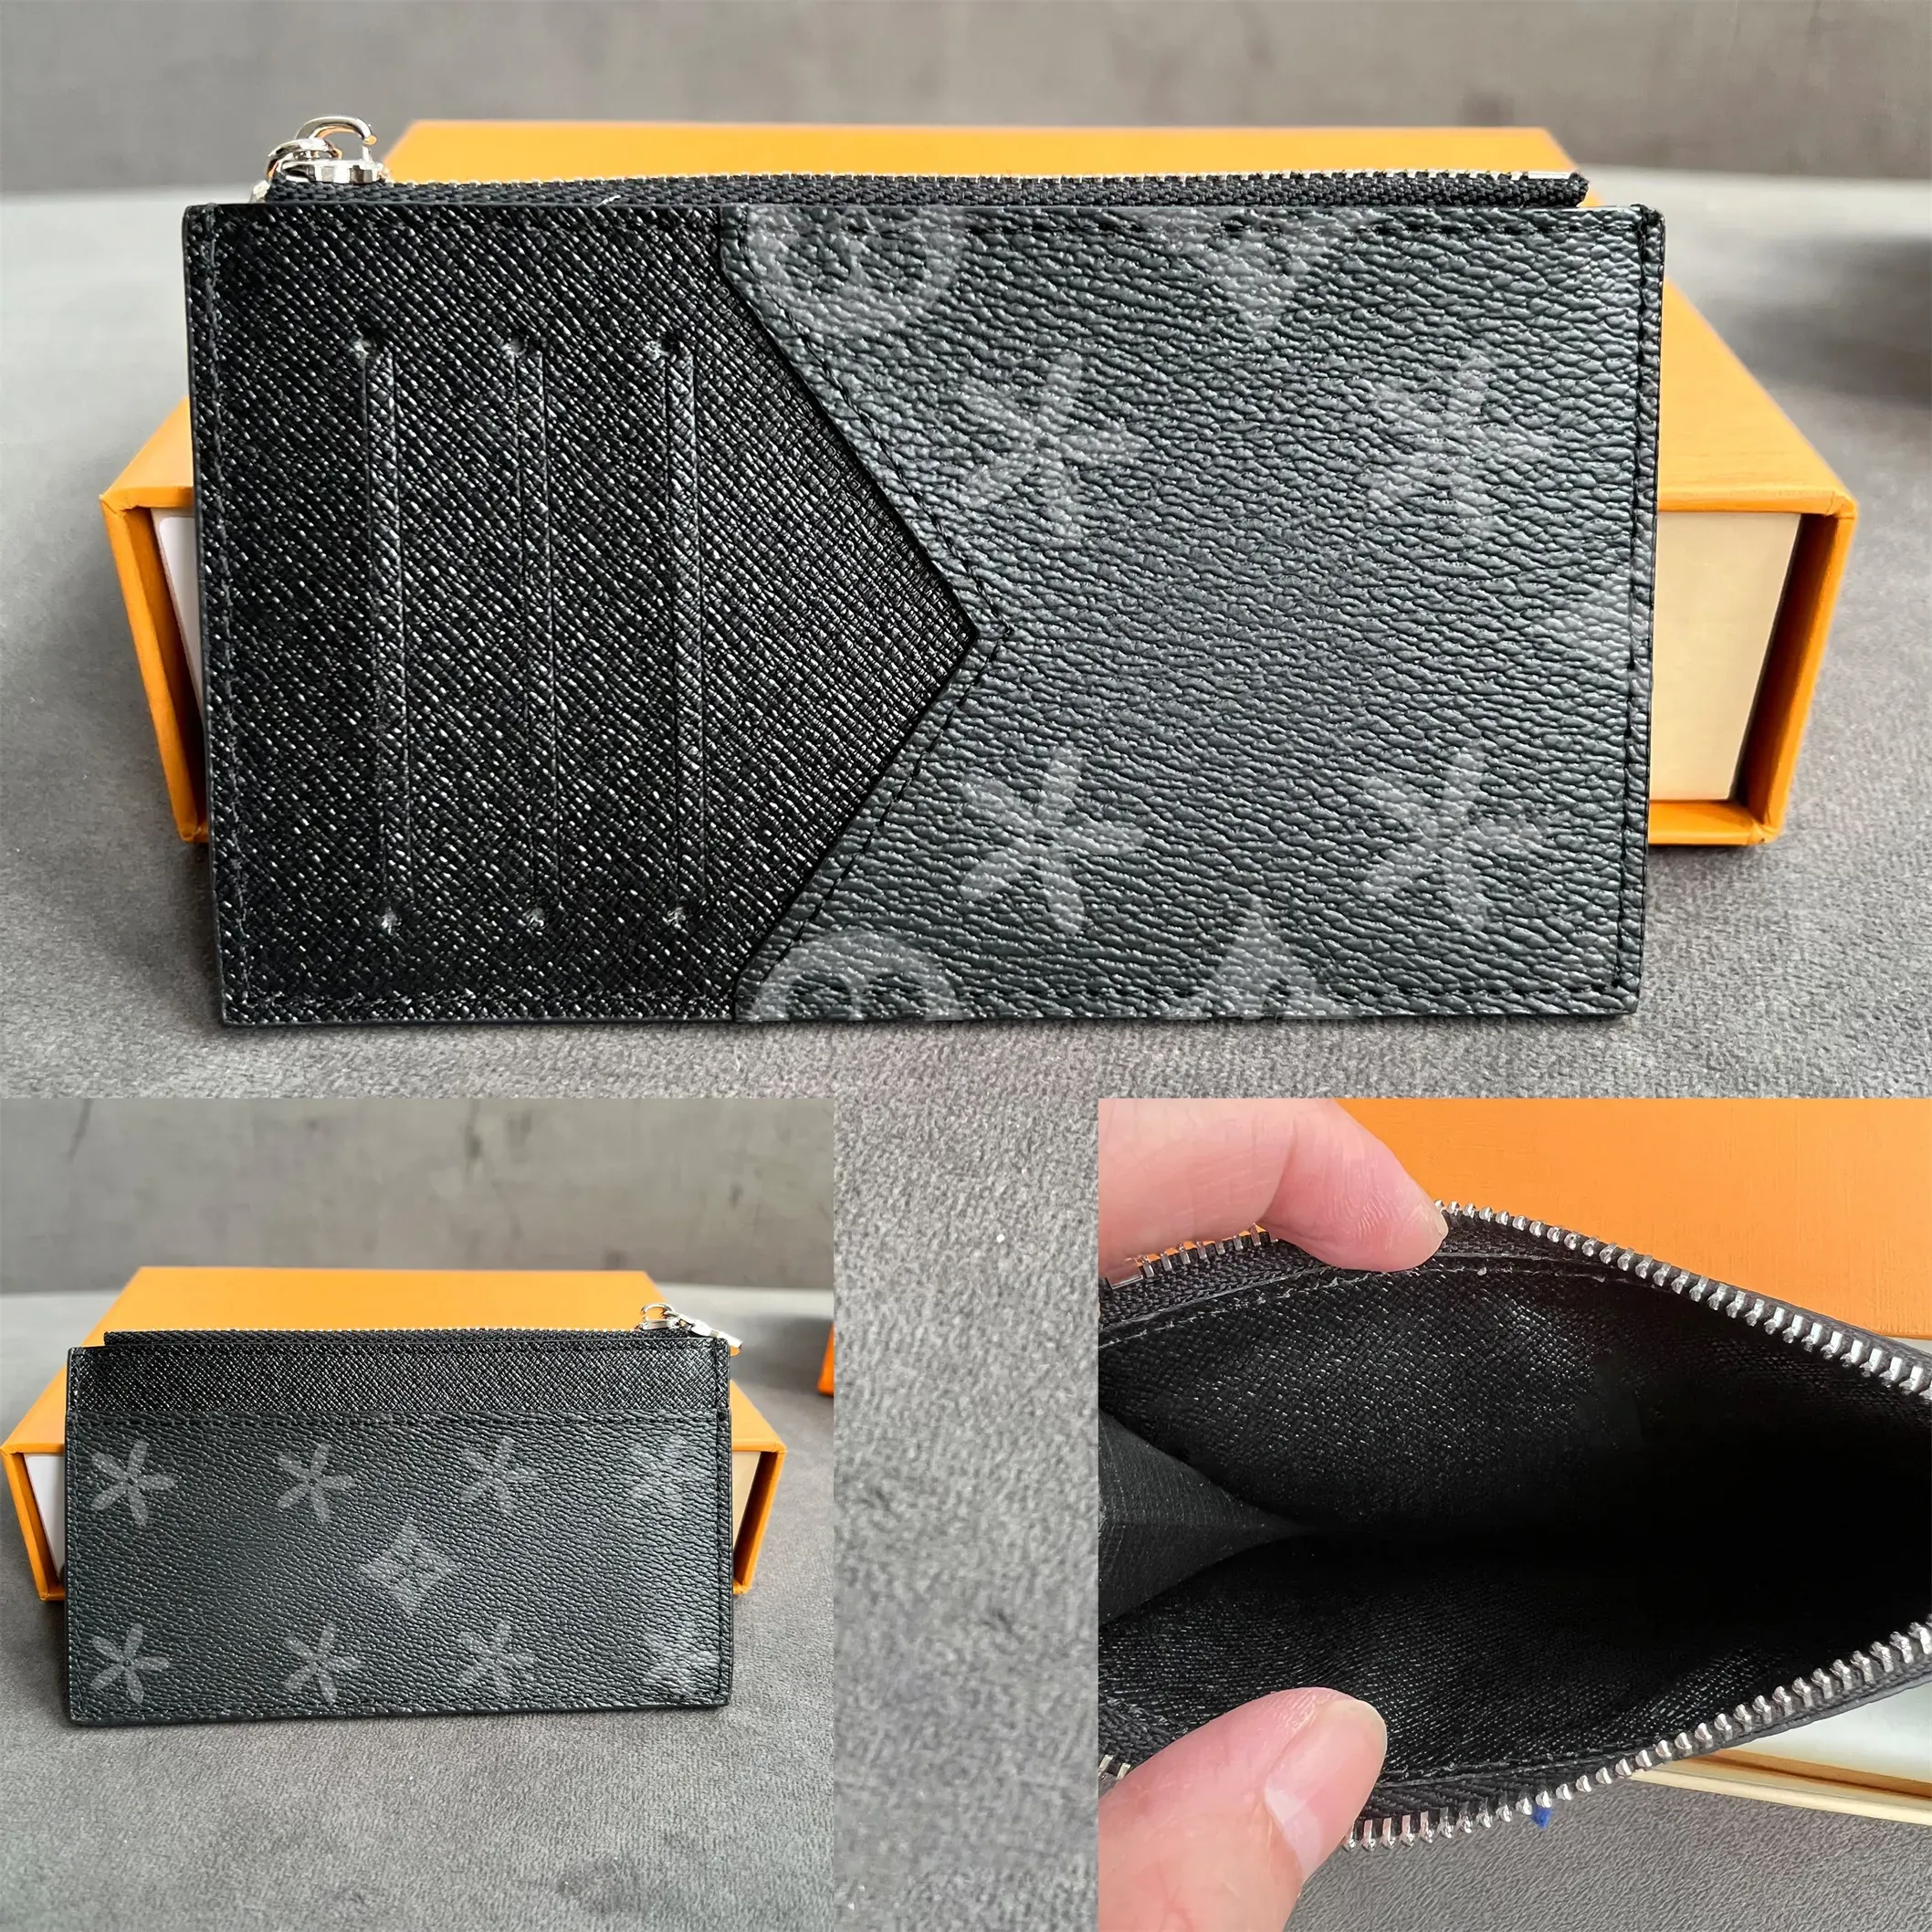 Luxurys bayan tasarımcılar cüzdan m30271 erkek kart tutucu en kaliteli orijinal deri anahtarlık moda madeni para cüzdanlar anahtar cüzdanlar çanta debriyaj çantaları